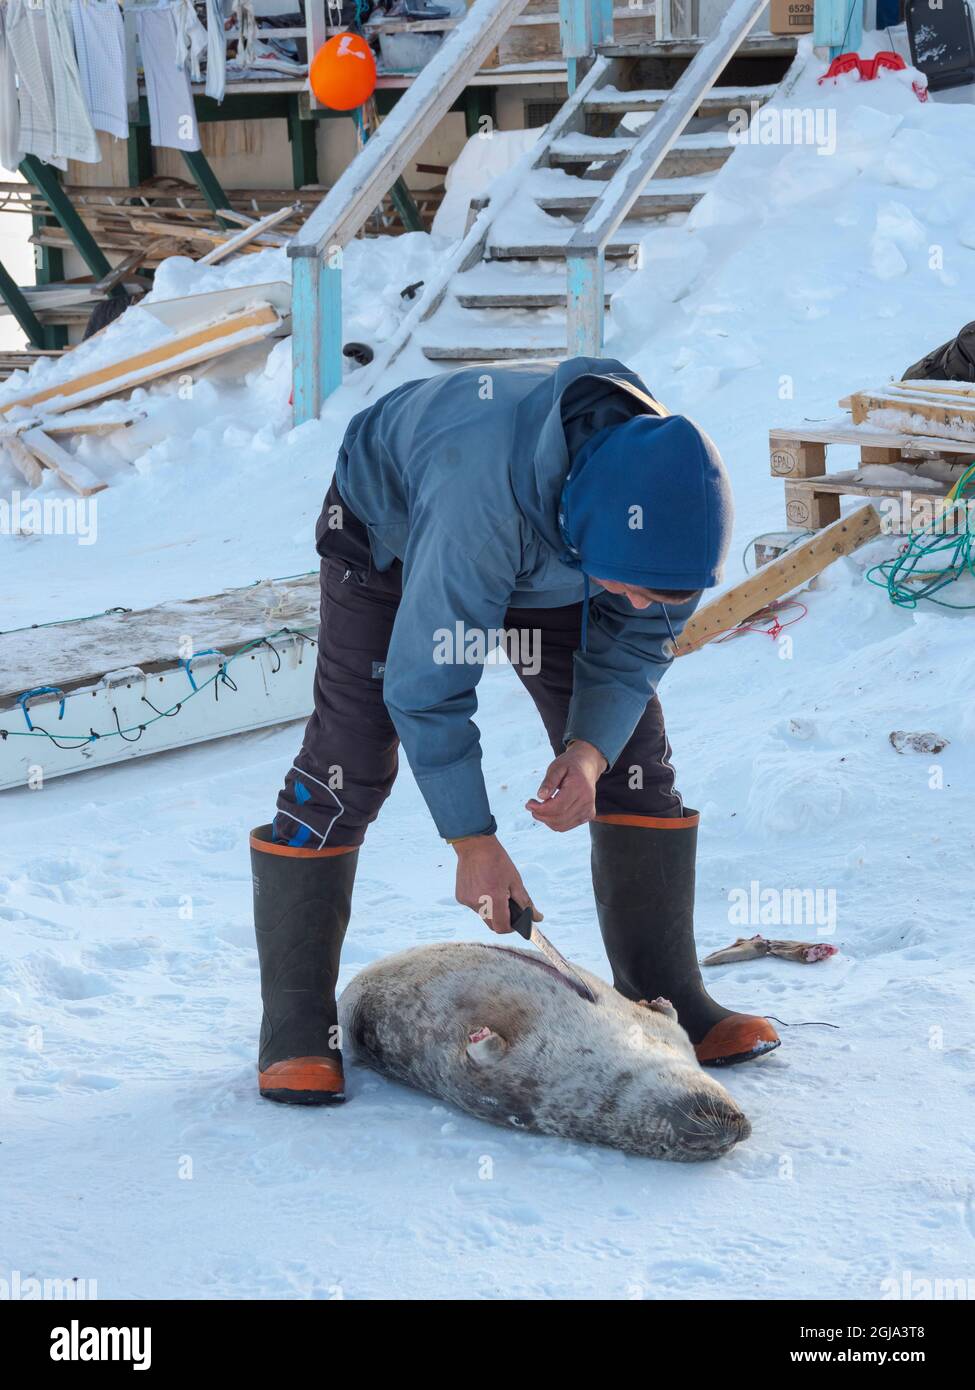 Enthäuten einer gejagten Robbe. Das traditionelle und abgelegene grönländische Inuit-Dorf Kullorsuaq, Melville Bay, Grönland, dänisches Territorium. (Redaktionelle Verwendung Stockfoto